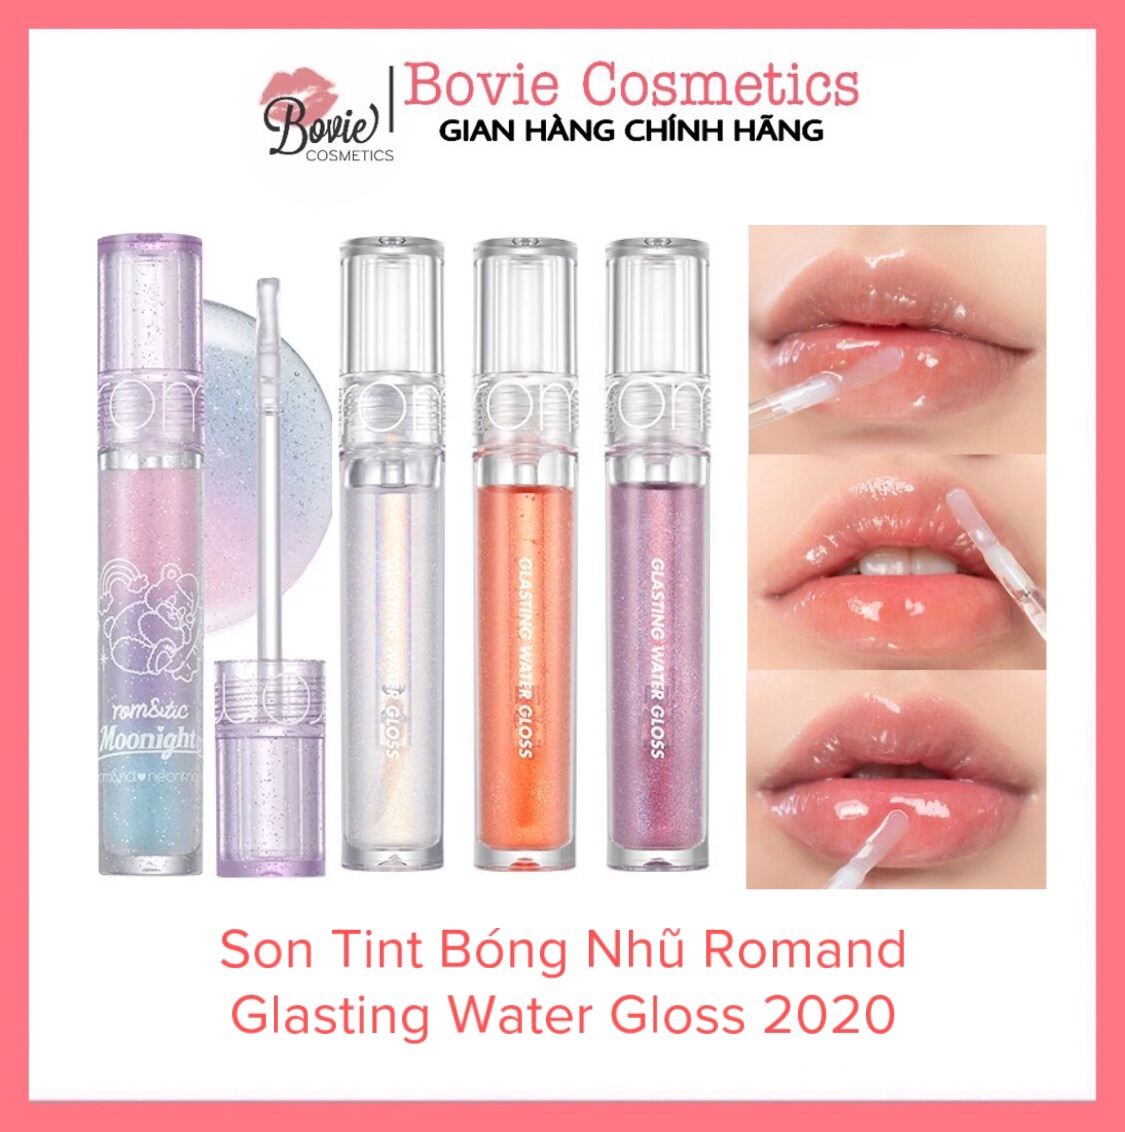 Son Tint Bóng Nhũ Romand Glasting Water Gloss 2020 màu 00-01-02-N01